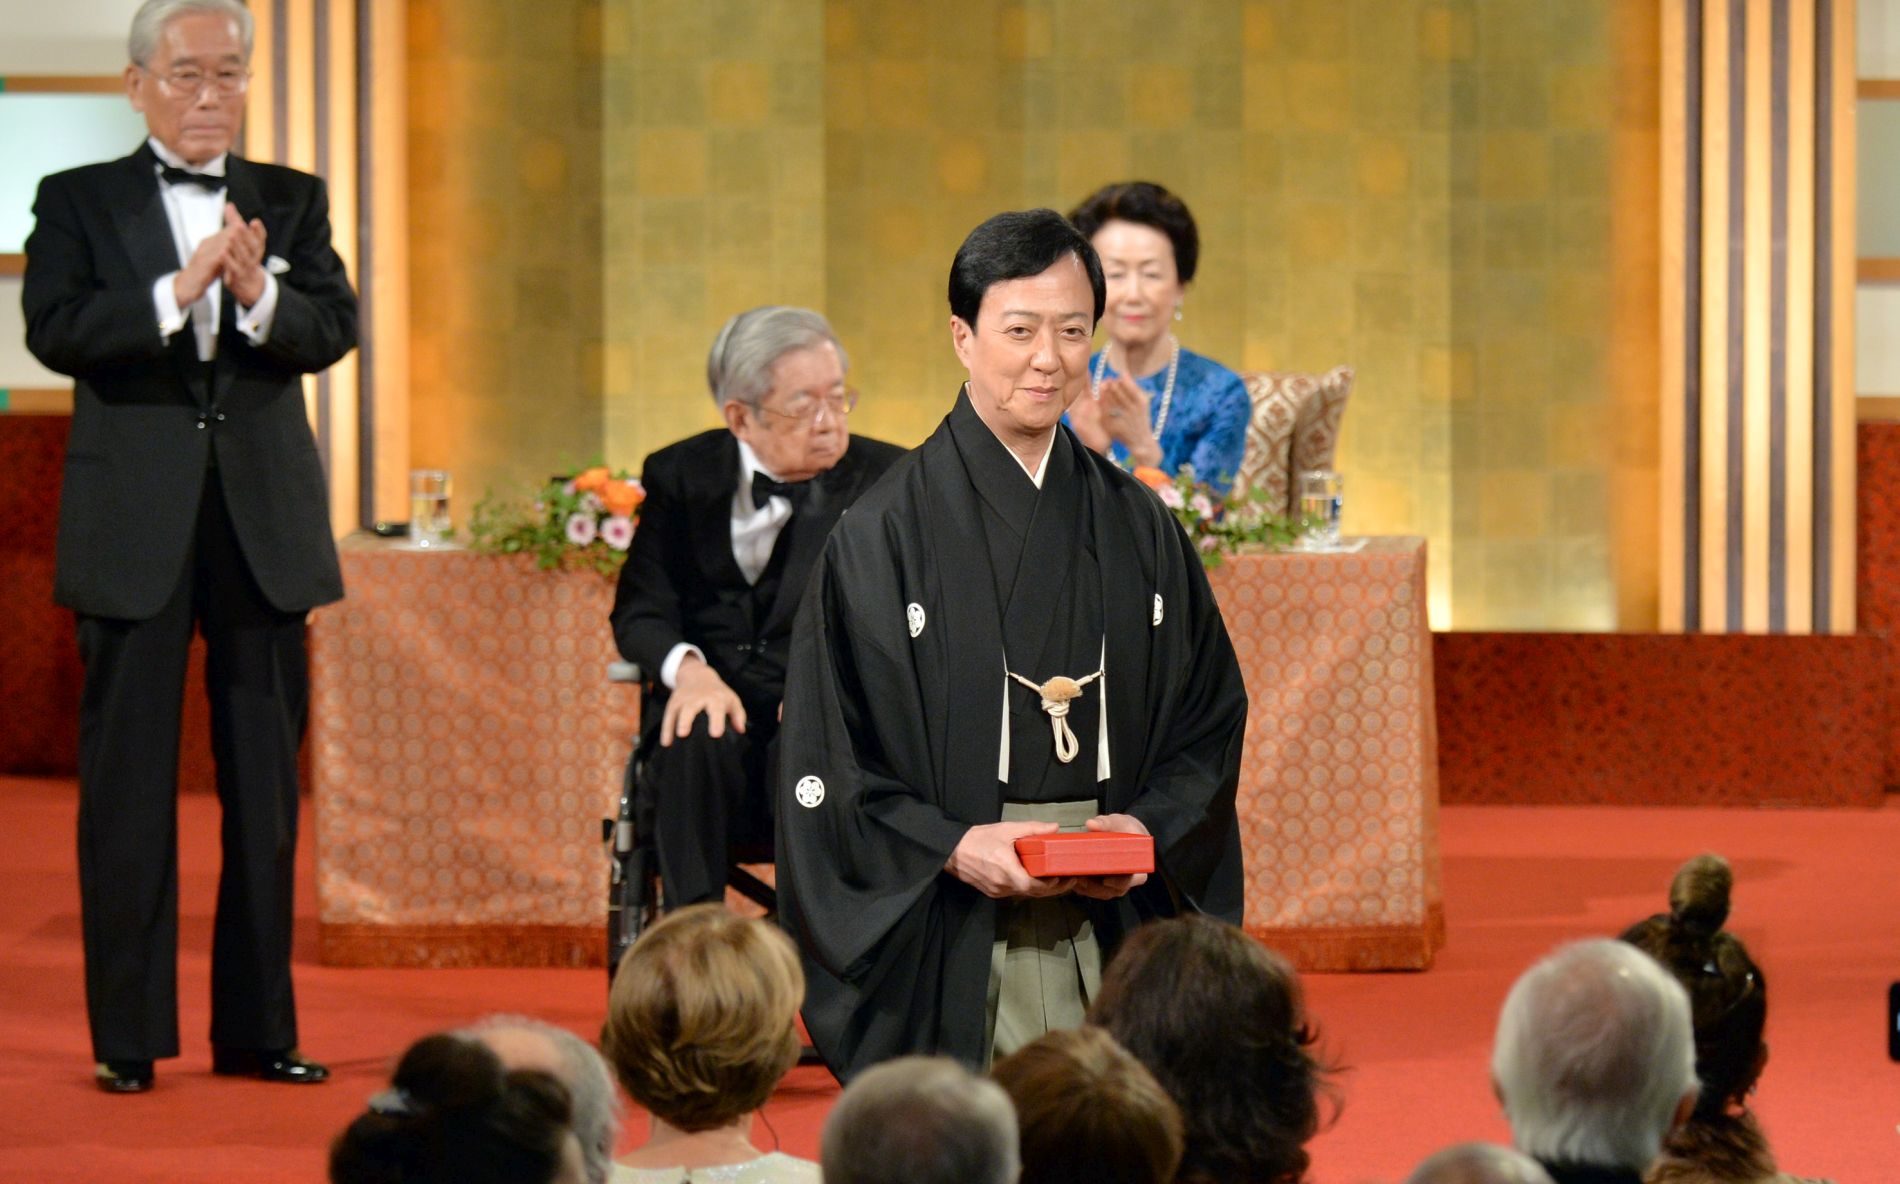 Japan Praemium Imperiale Awards Ceremony 2019 at Tokyo